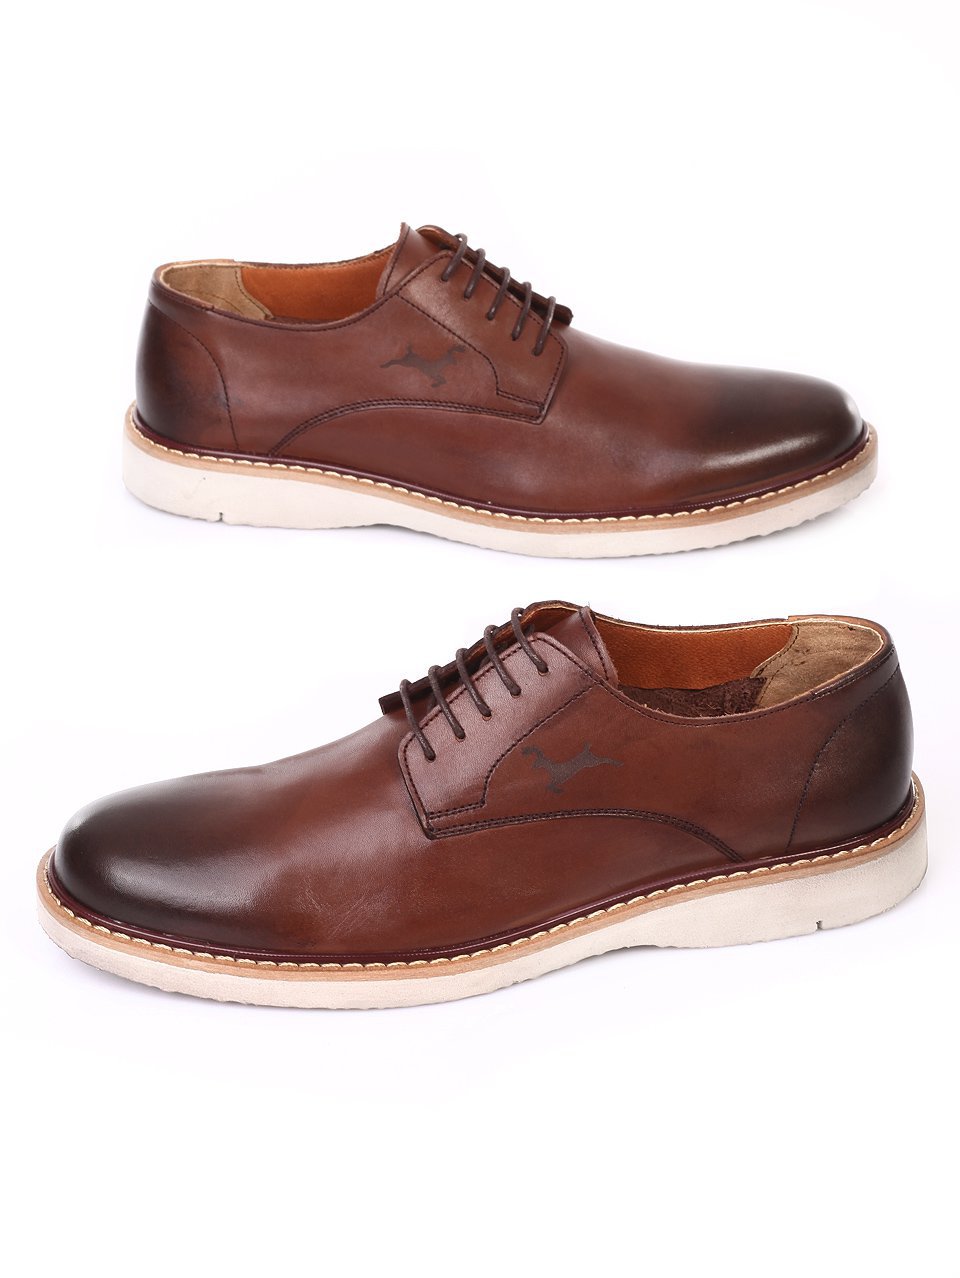 Официални мъжки обувки от естествена кожа 7AT-18562 coffee 